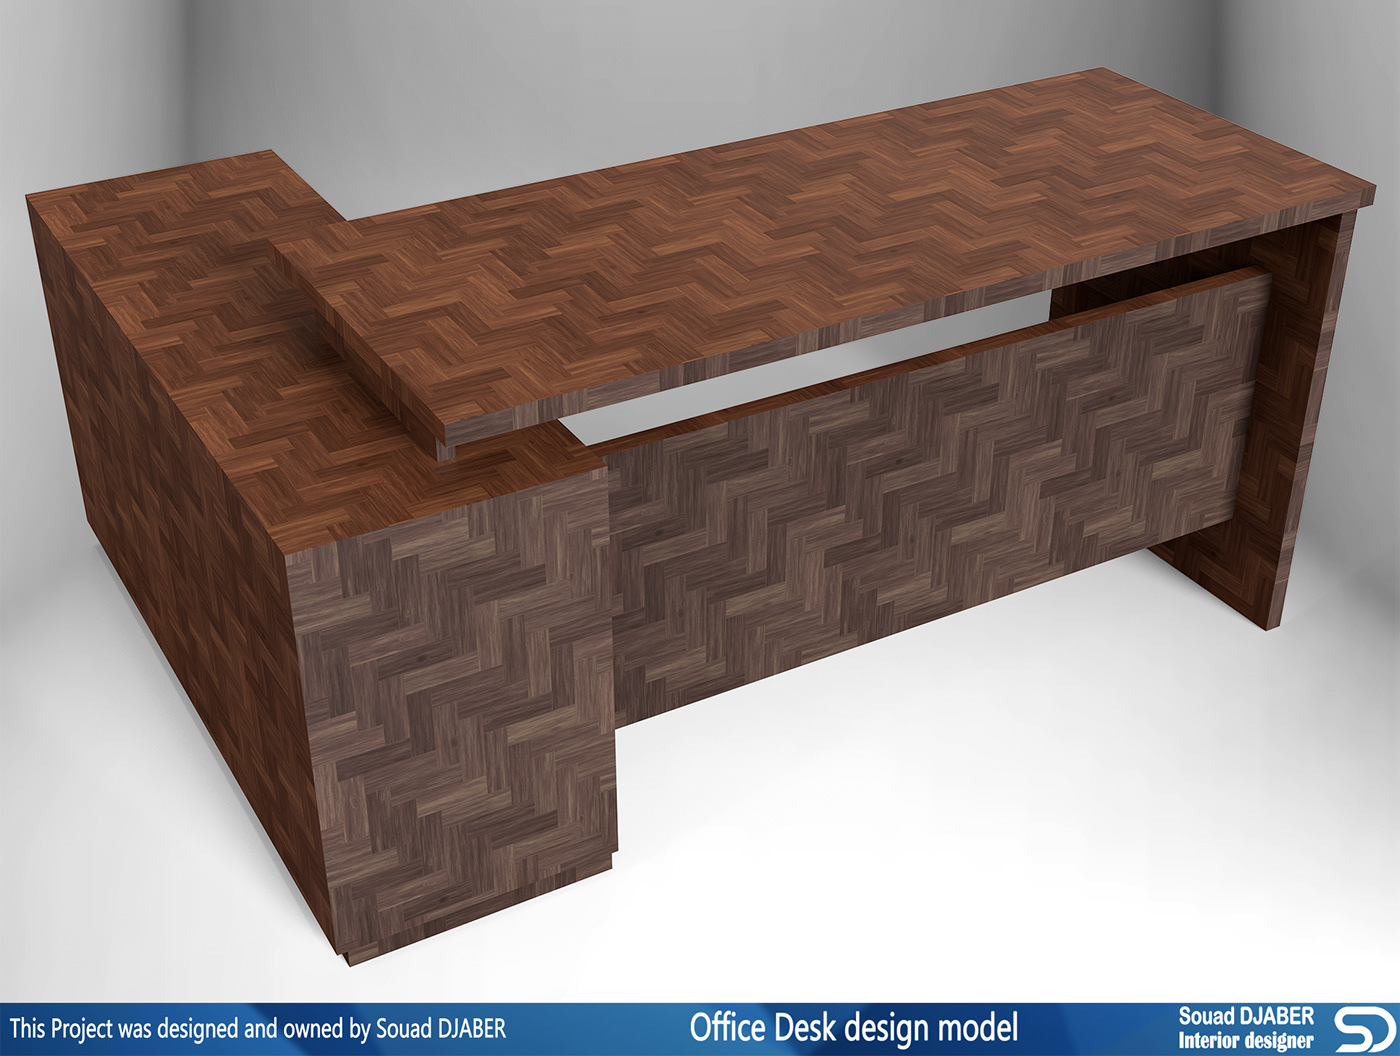 office desk desks interiors office furniture interior design  Souad djaber CGI 3D model